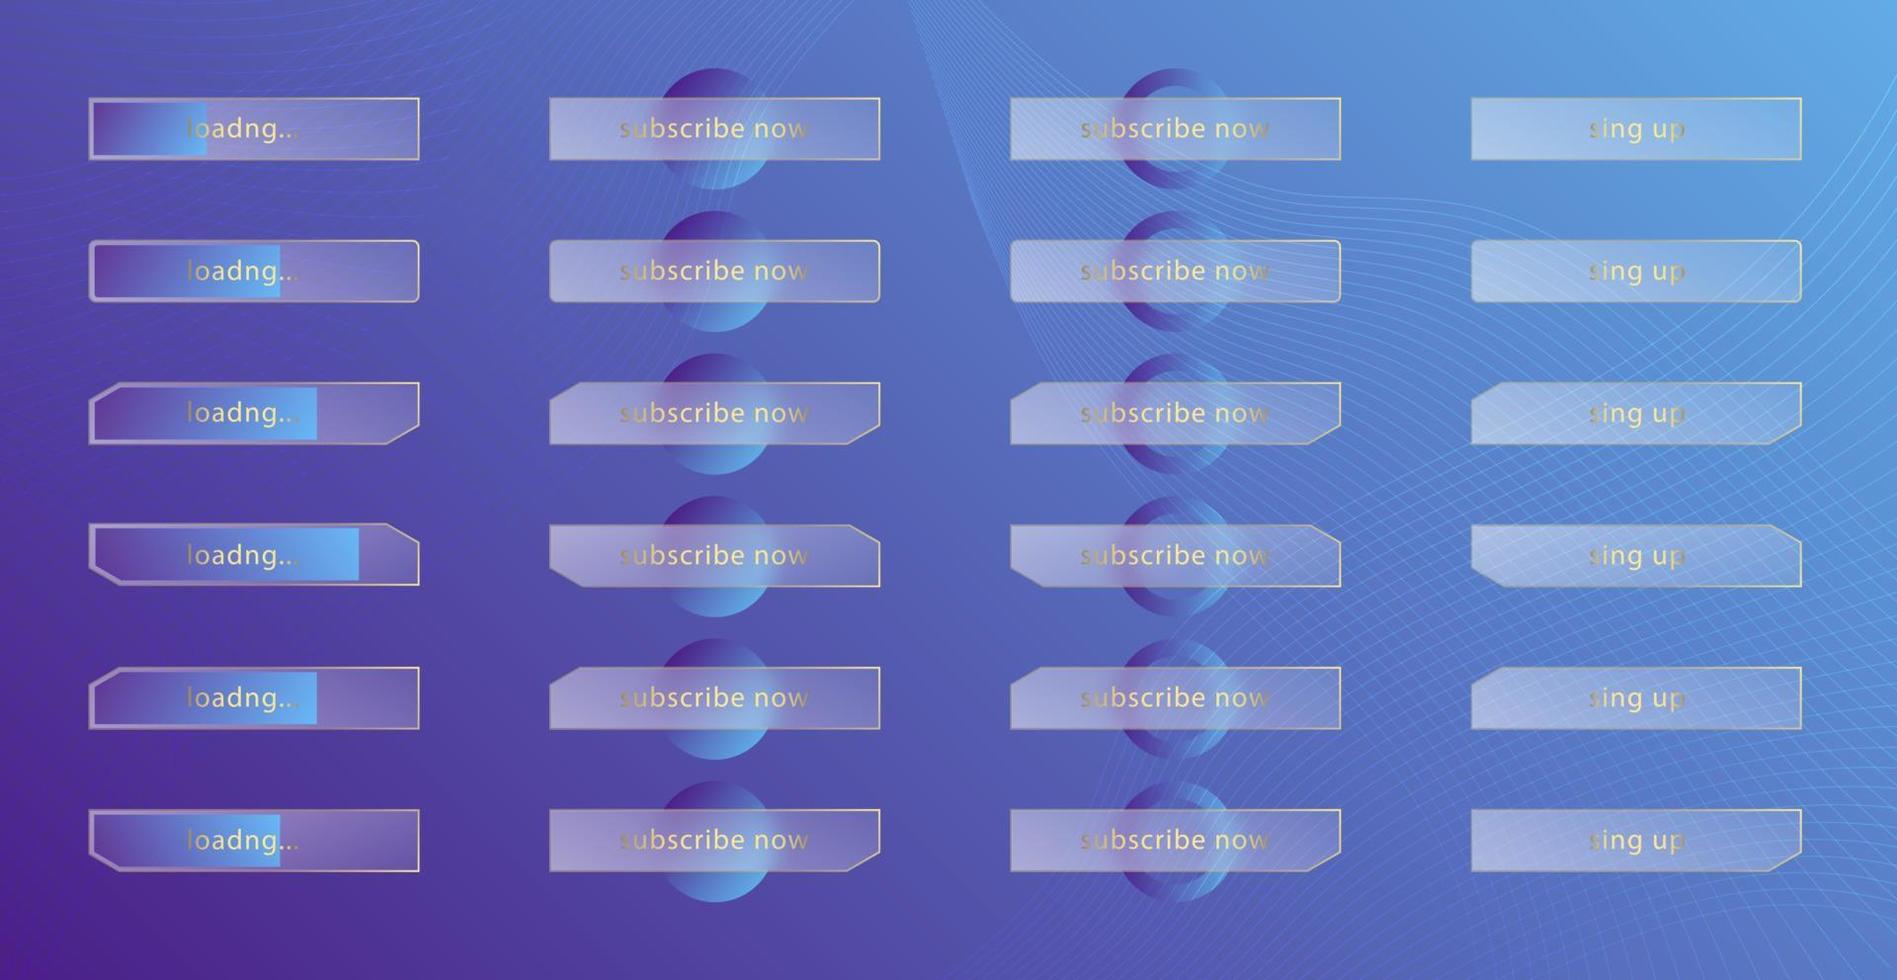 effetto morfismo vetroso. set di pulsanti e barre di caricamento in acrilico satinato trasparente. cerchi sfumati blu su sfondo viola. forma realistica in plexiglass opaco con morfismo di vetro. vettore